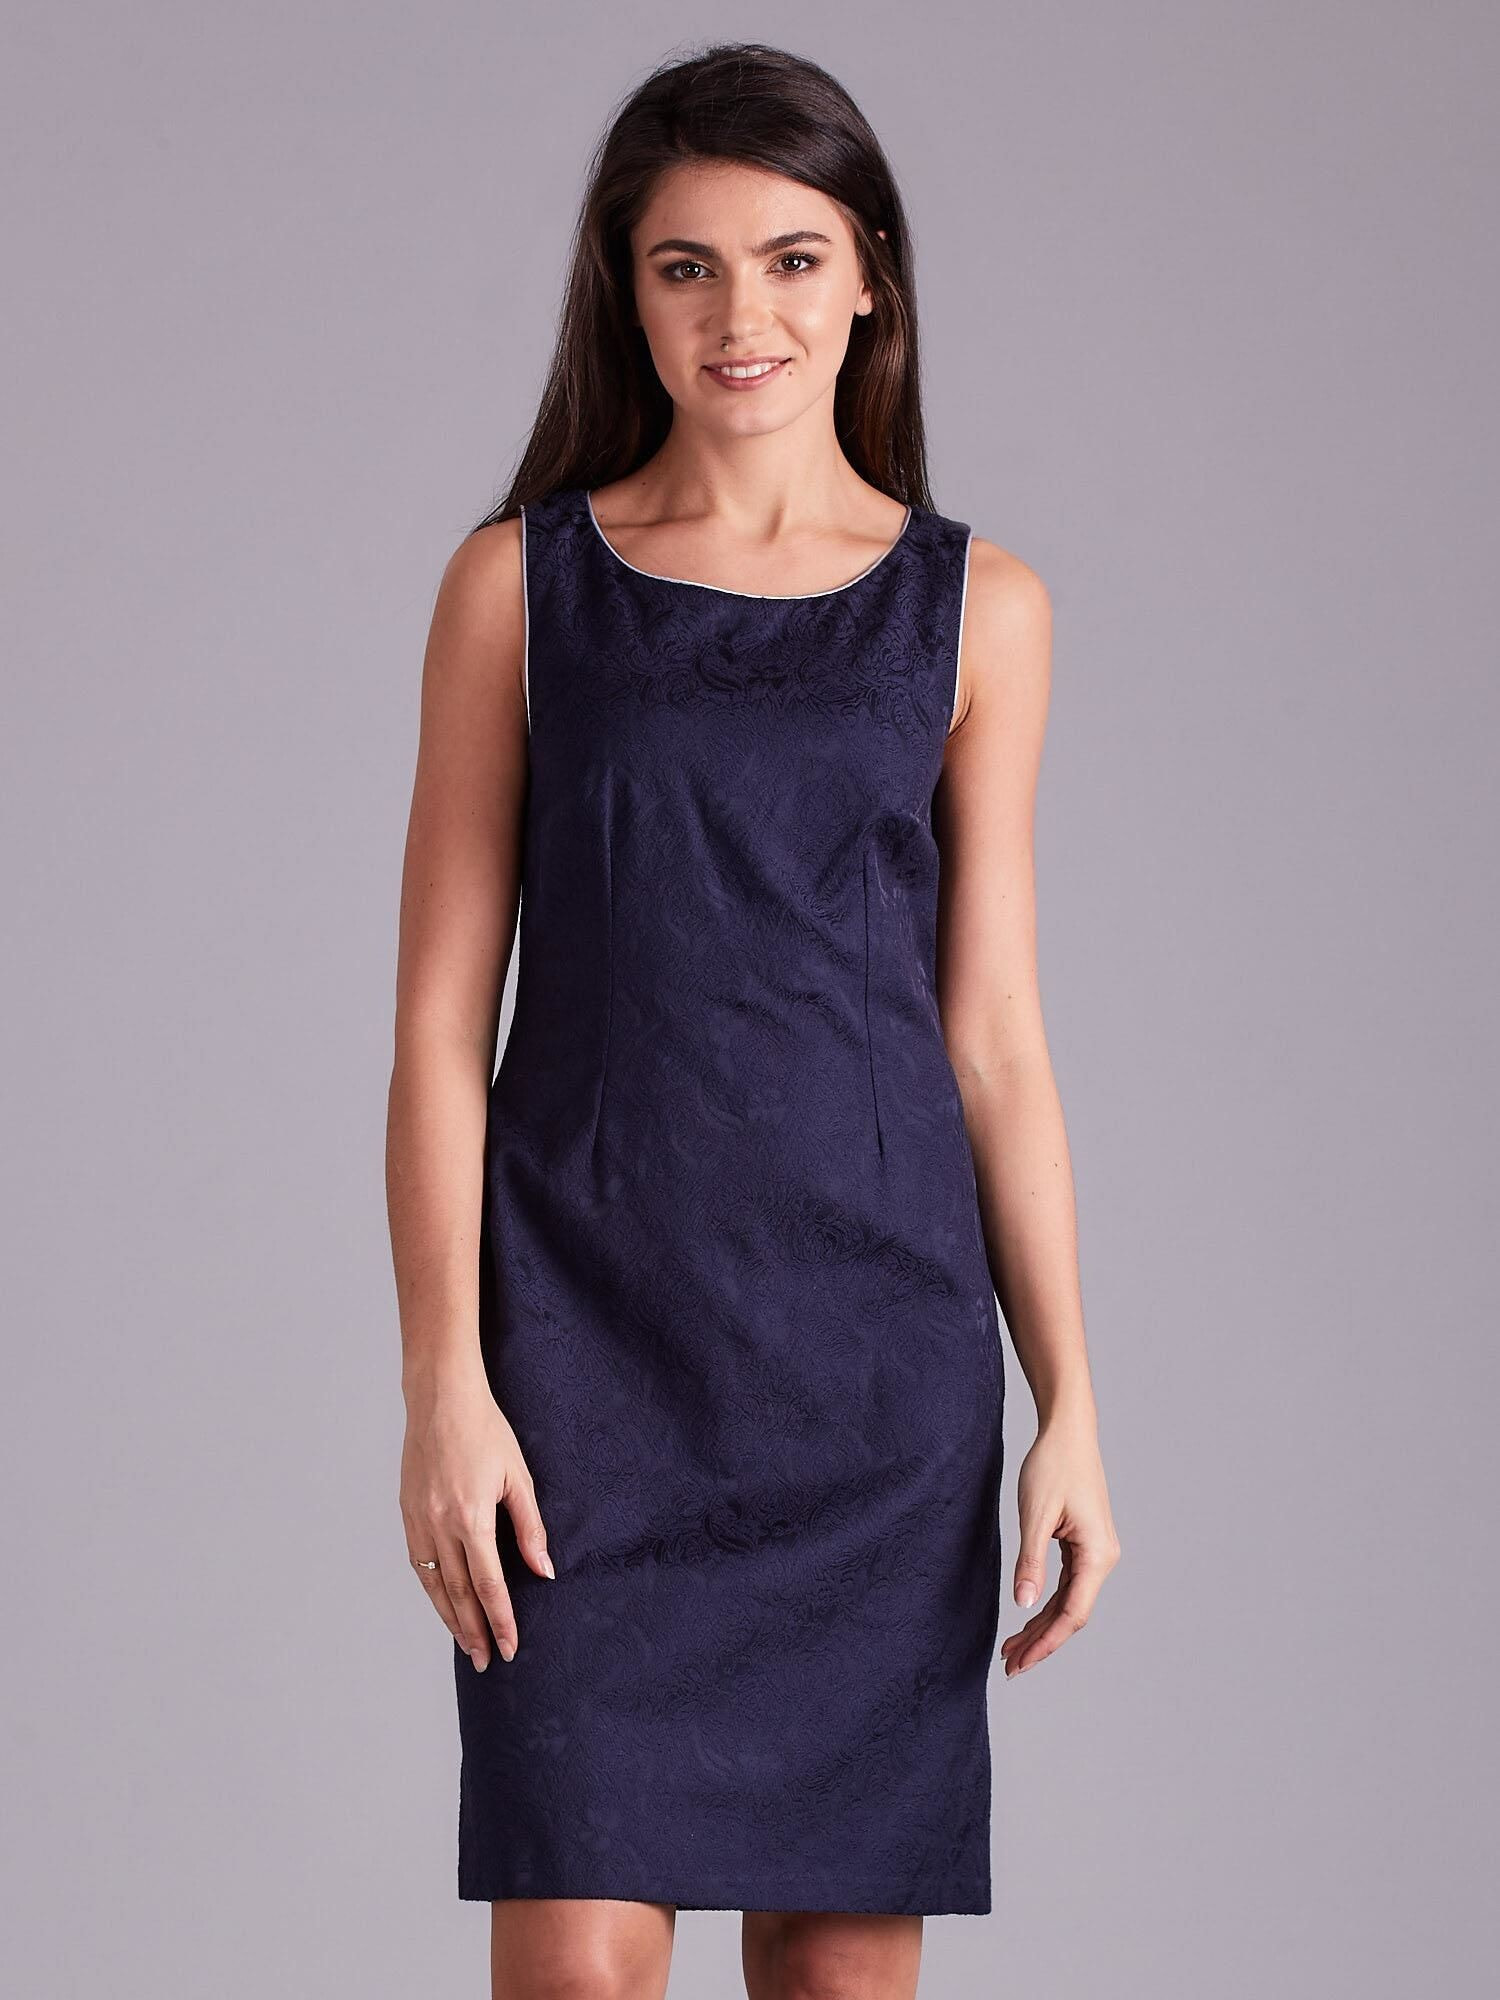 Женское платье футляр без рукавов голубое Factory Price